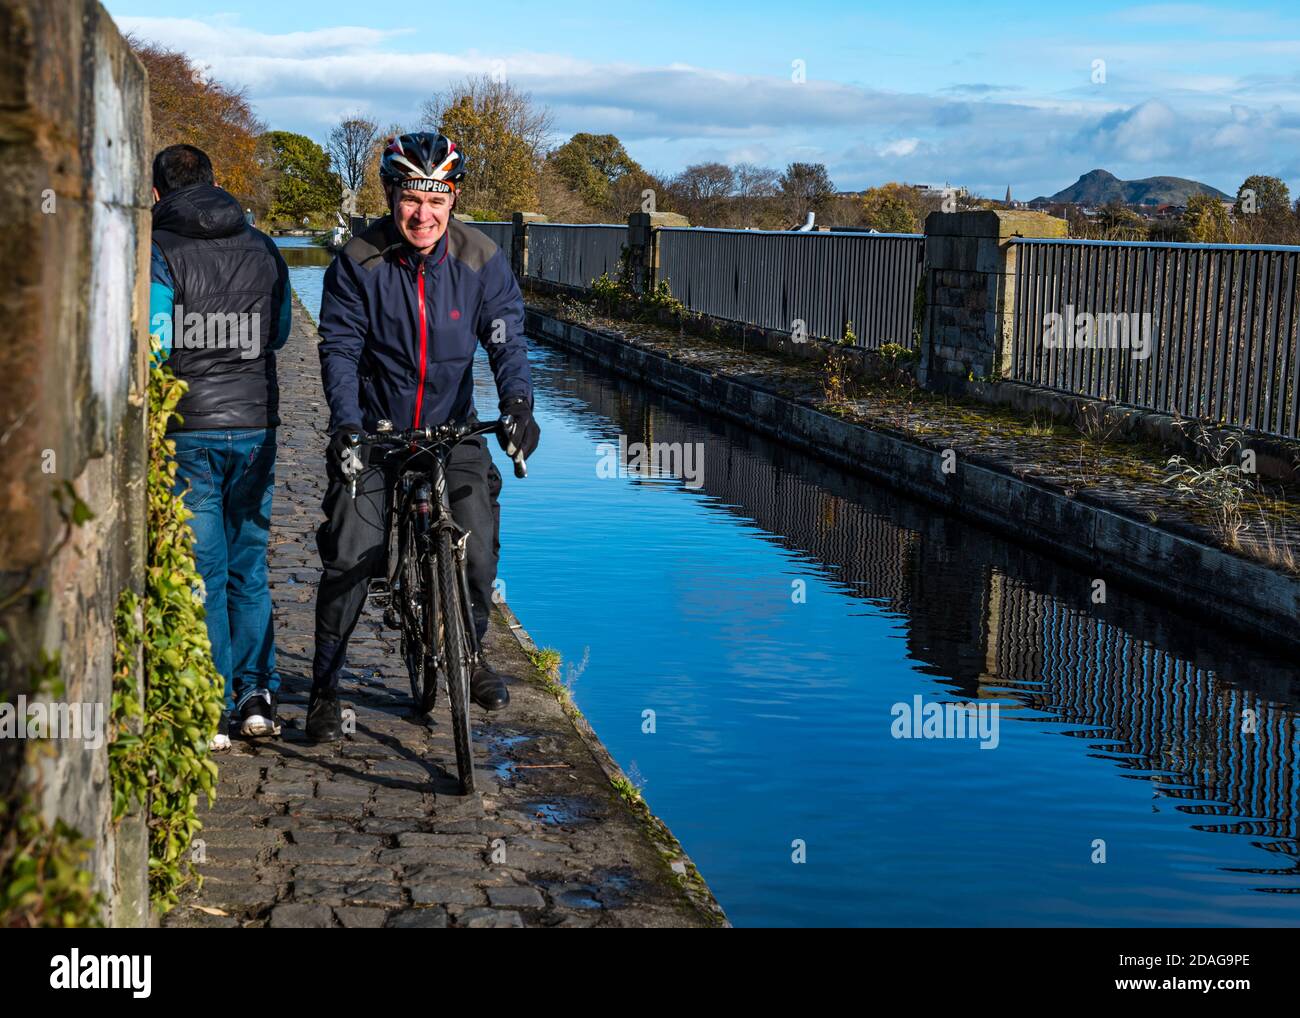 Homme traversant un chemin de halage étroit sur l'aqueduc de Slateford dans le chemin d'un marcheur ou d'un piéton pendant une pandémie, Union Canal, Édimbourg, Écosse, Royaume-Uni Banque D'Images